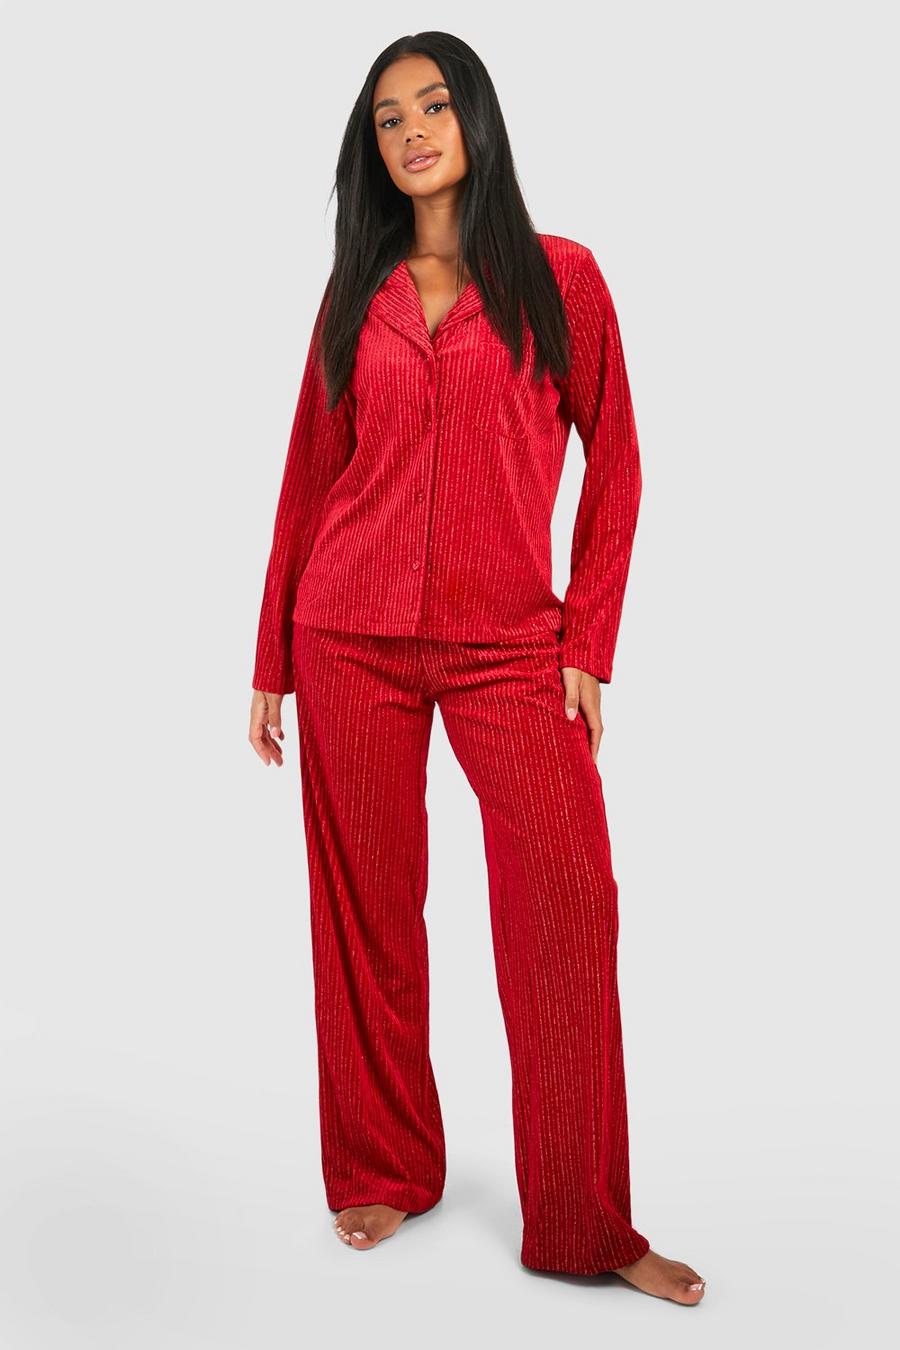 Sale Nightwear, Women's Pyjama Sets Sale